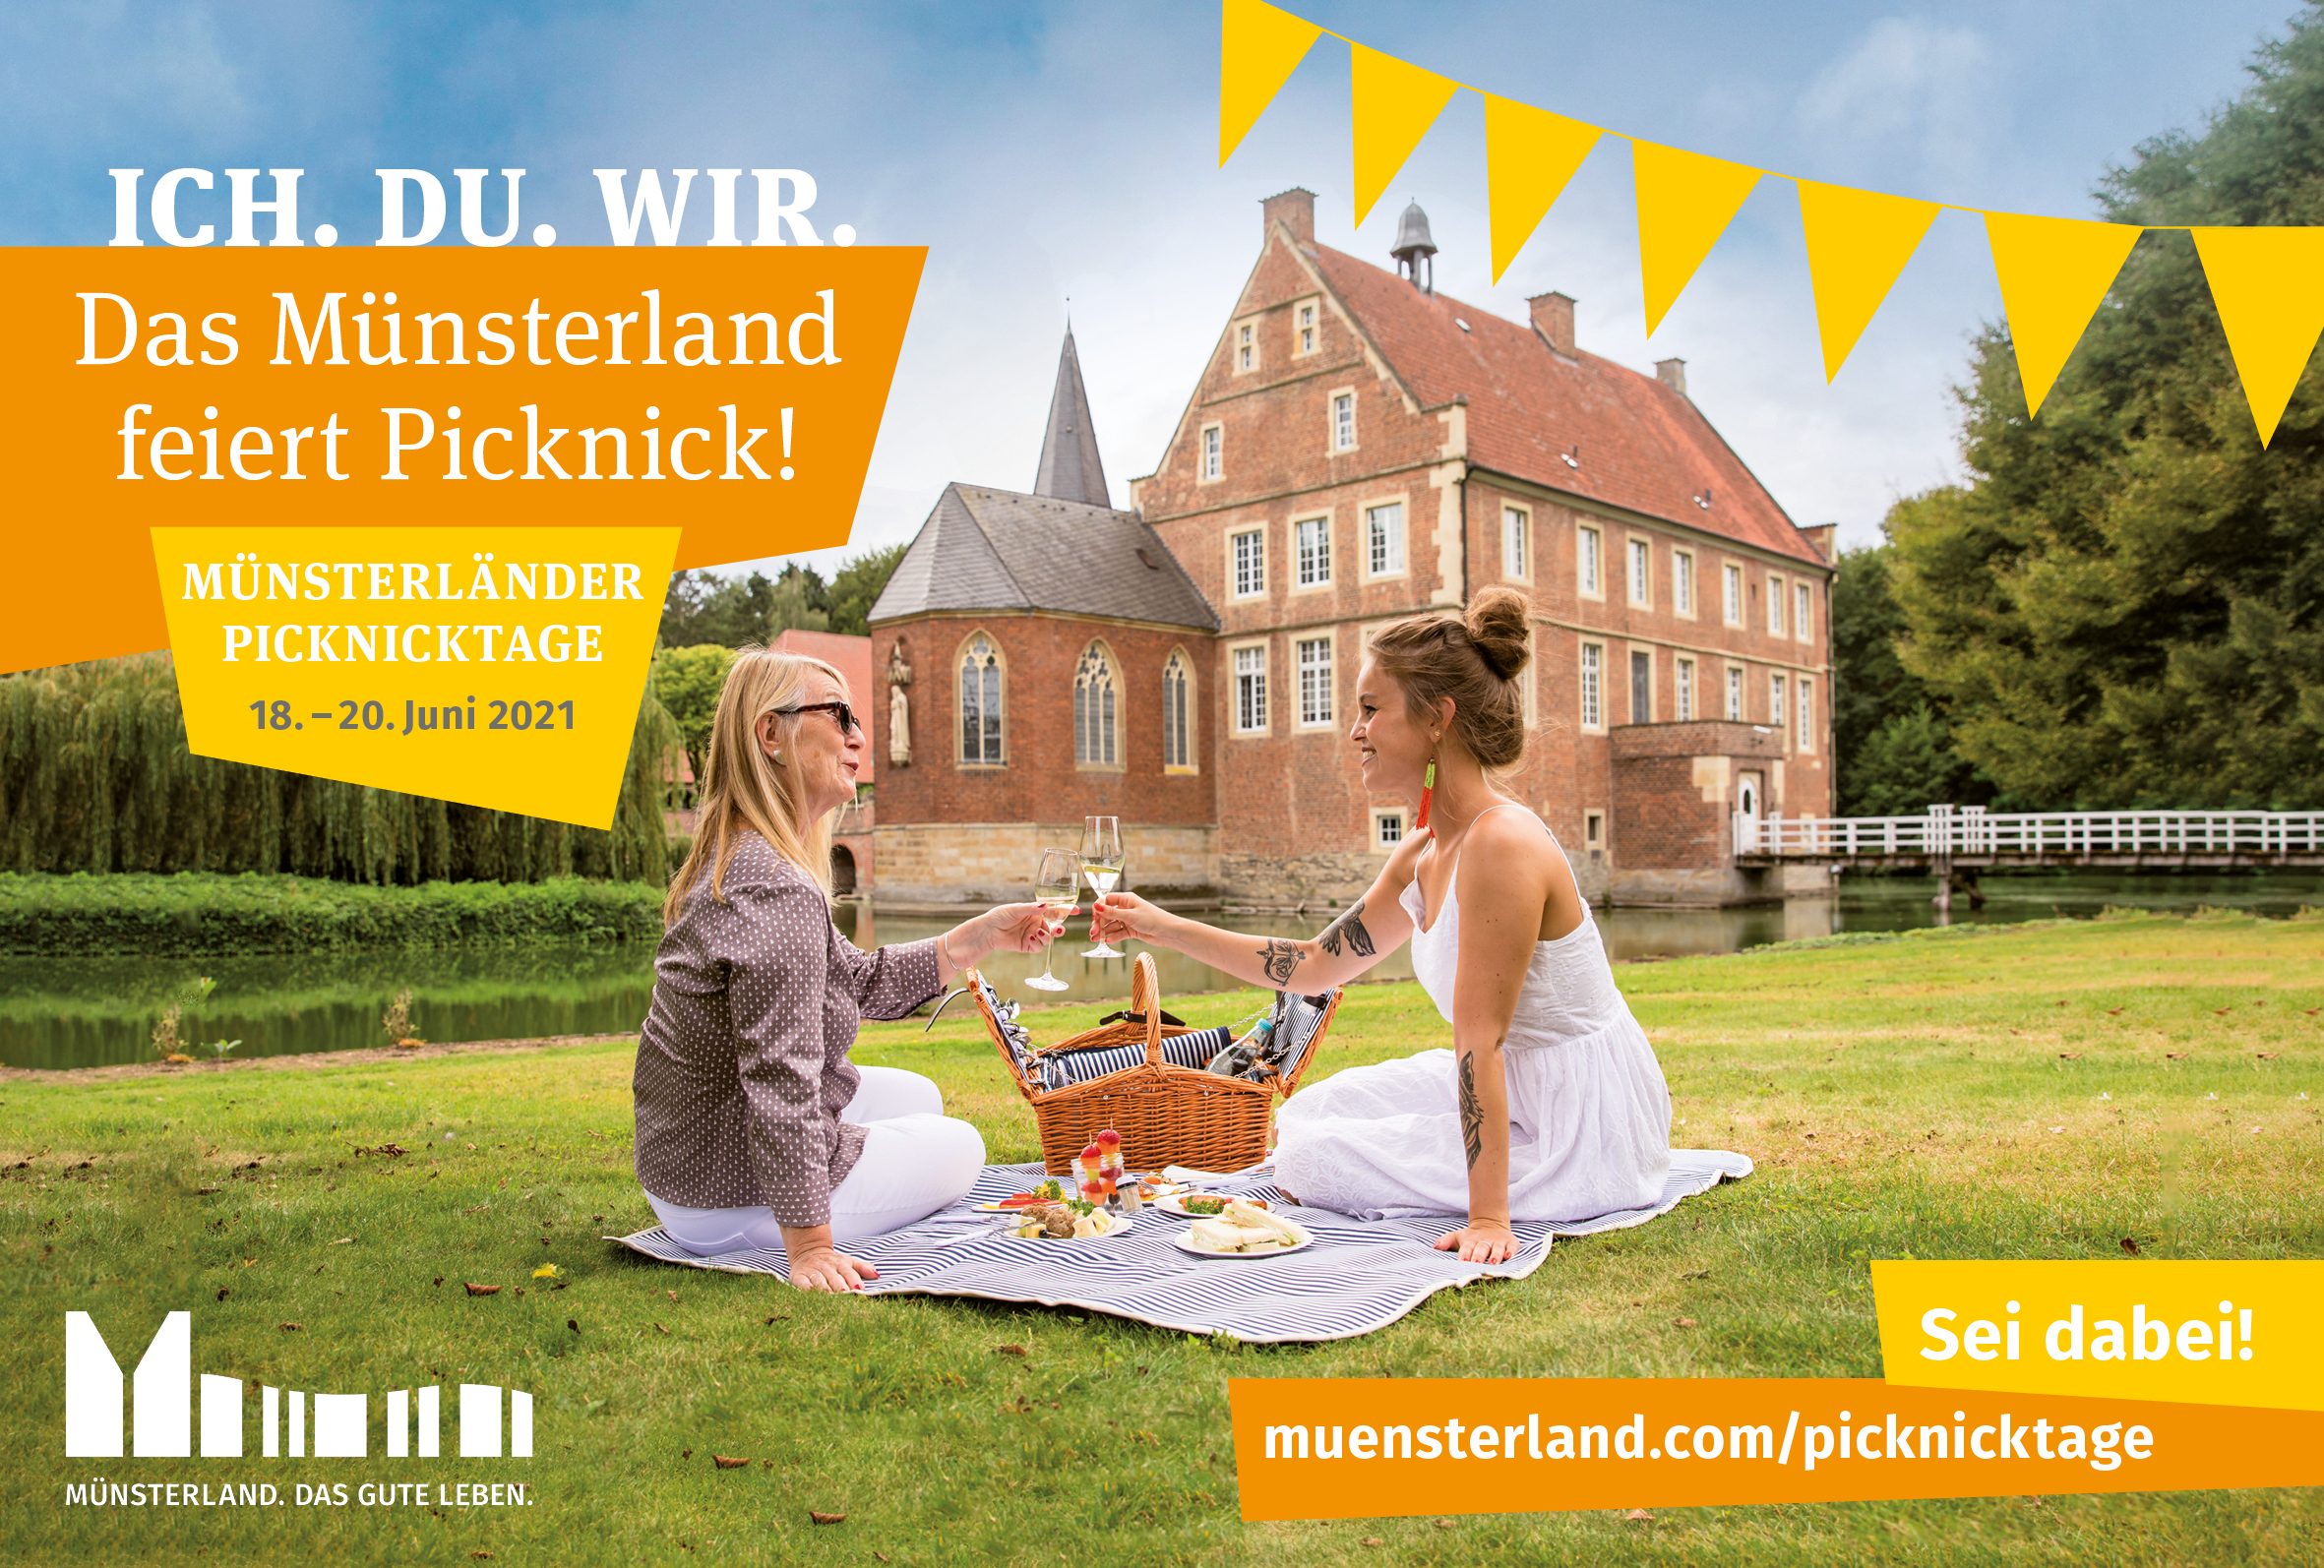 Erste Münsterländer Picknicktage: Noch drei Wochen bis zum Start am 18. Juni